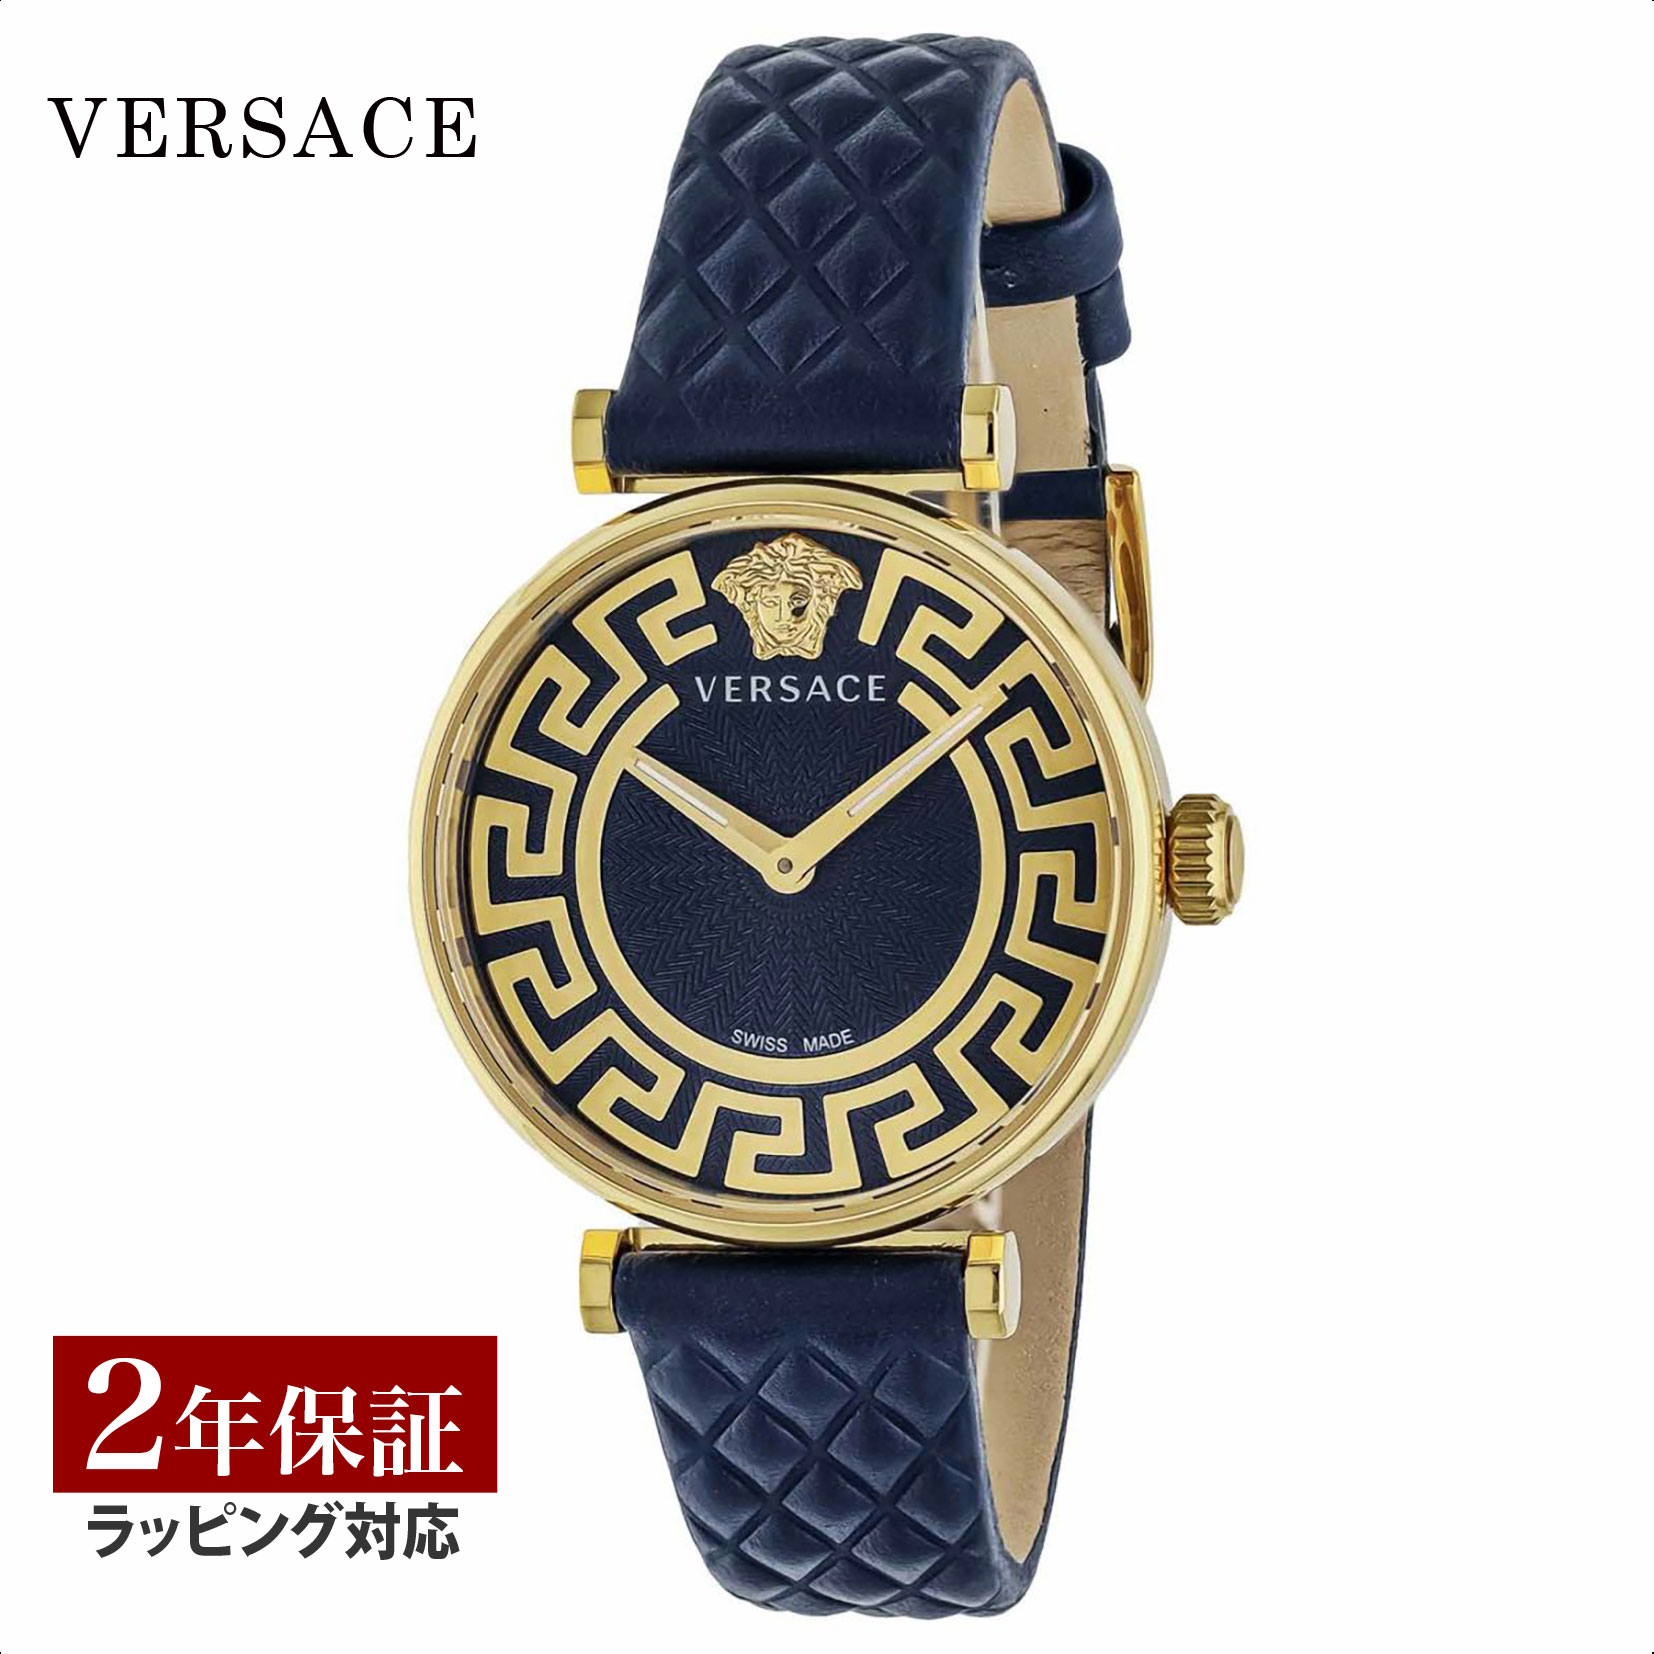  ヴェルサーチェ ヴェルサーチ VERSACE レディース 時計 New Lady ニューレディ クォーツ ブルー VE1CA0223 時計 腕時計 高級腕時計 ブランド 